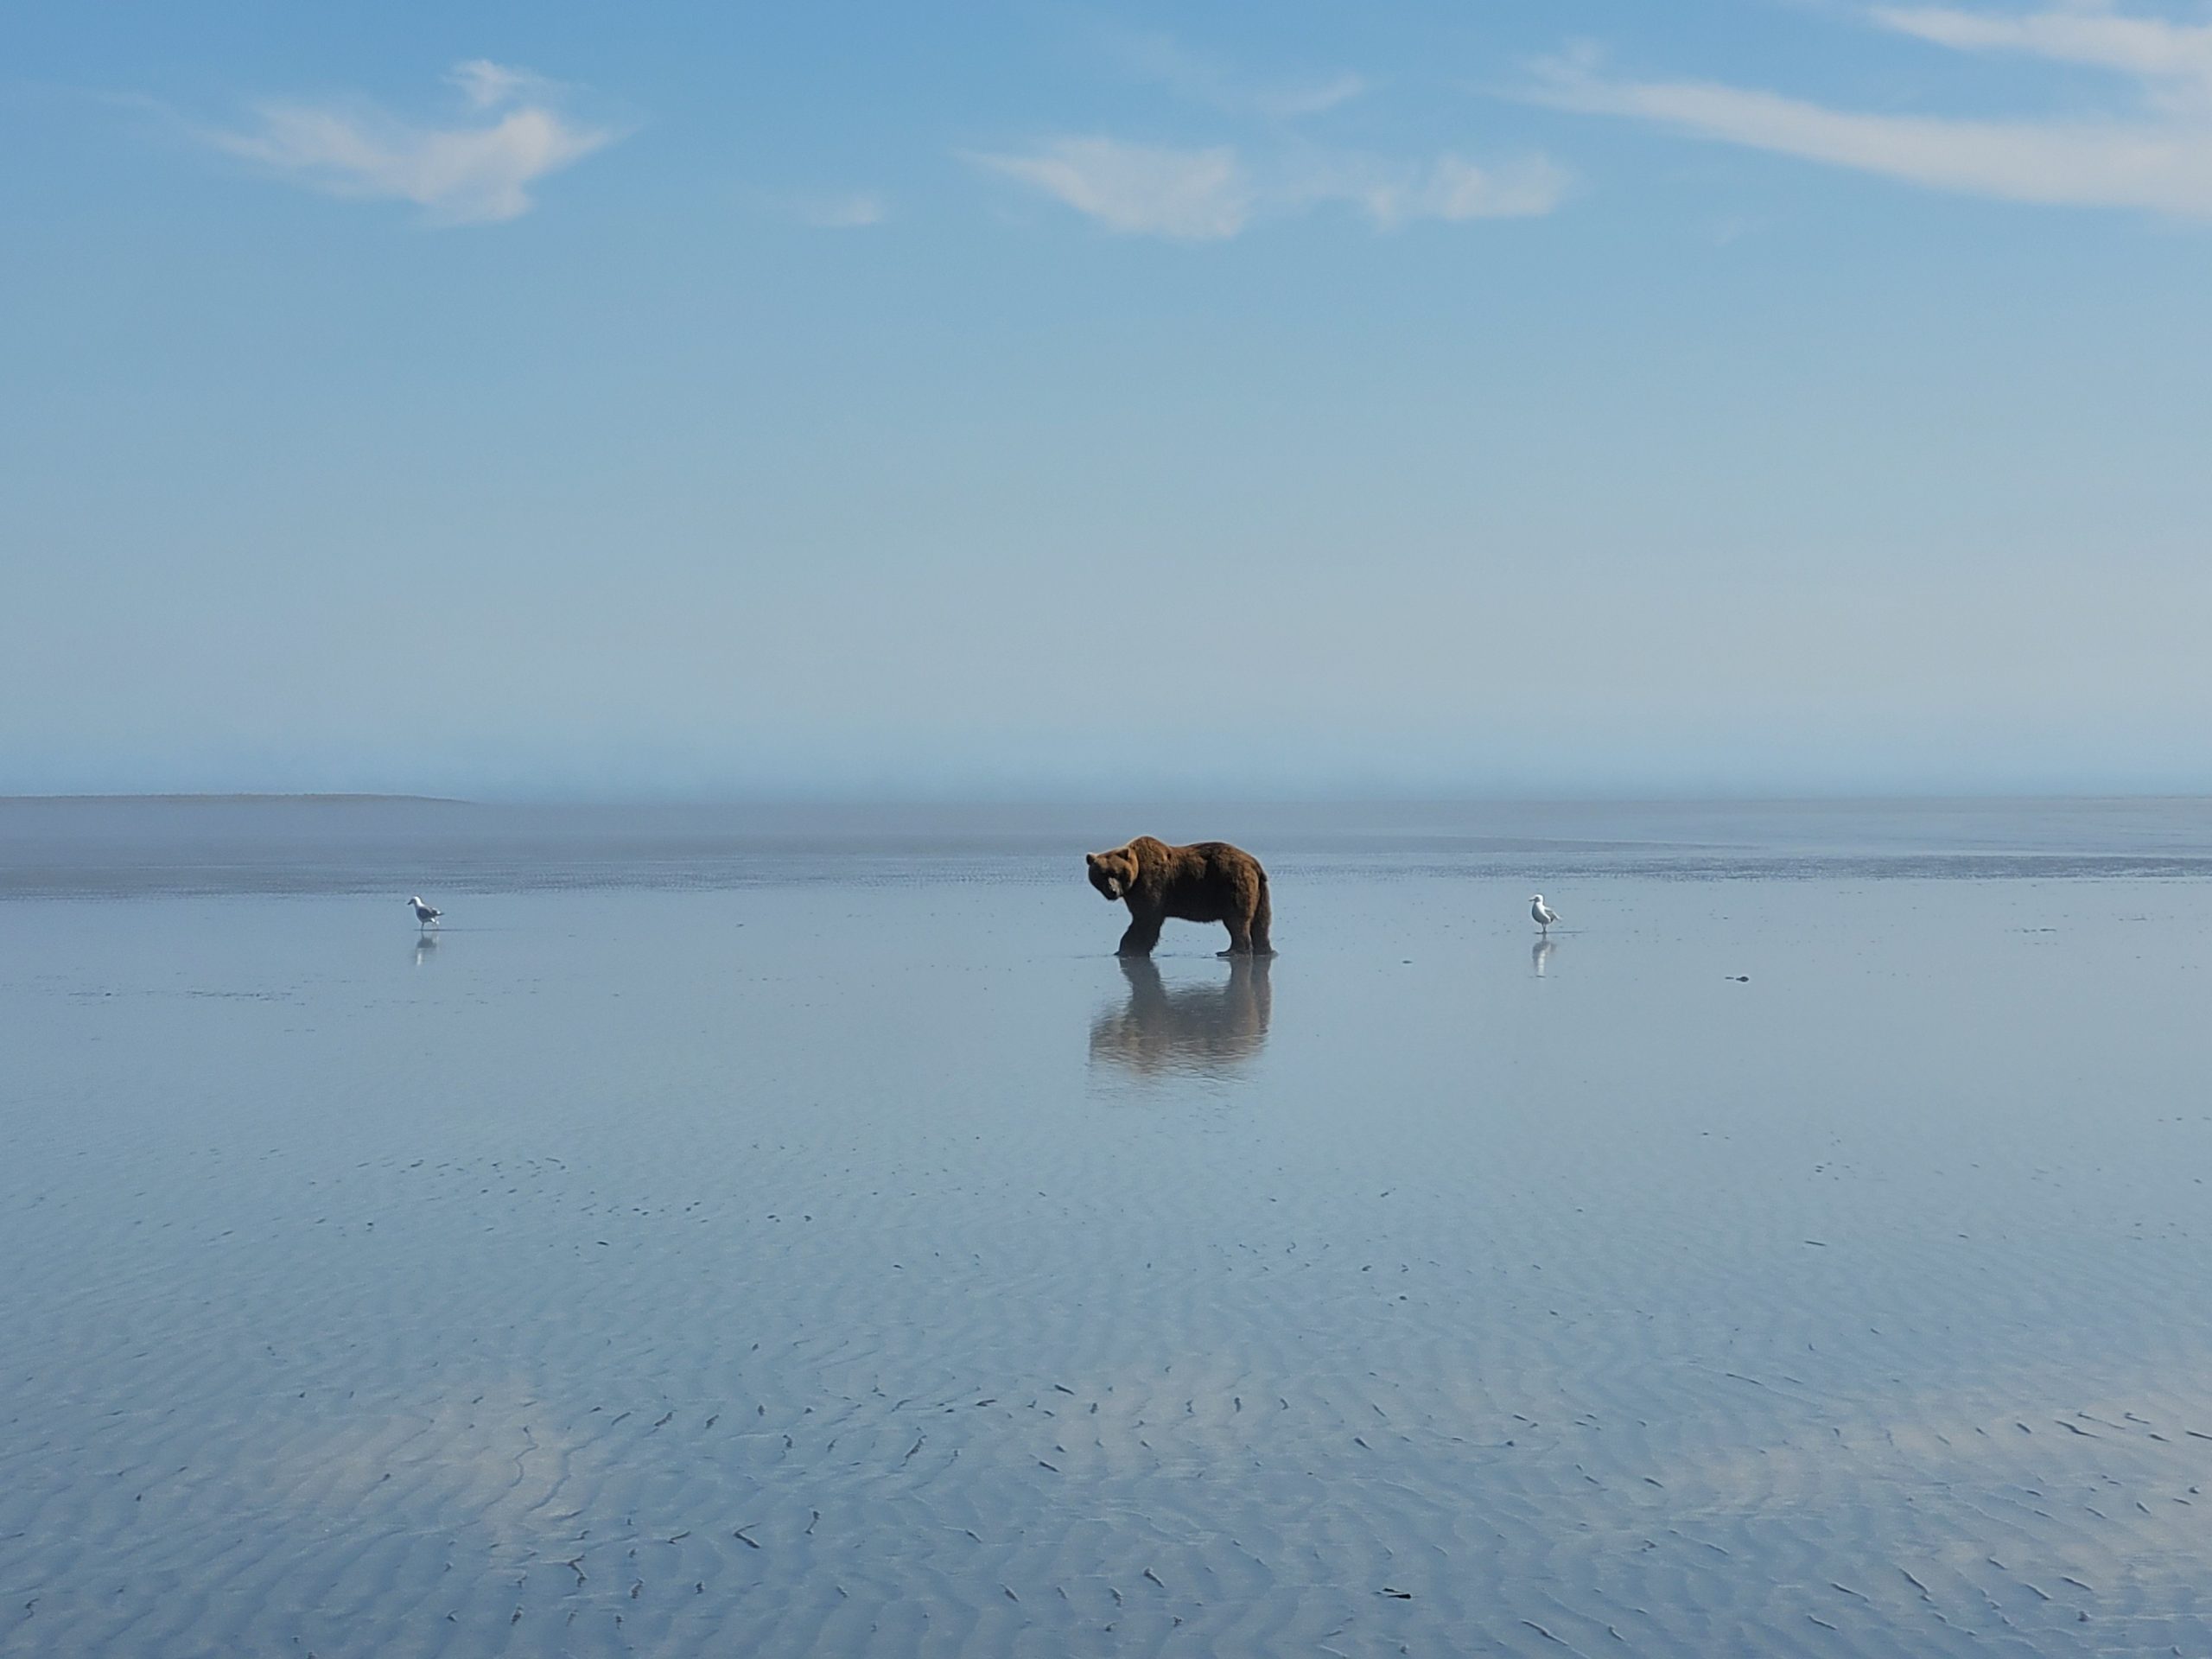 TRIP REPORT: 6/28/22 Alaskan Bear Viewing Experience